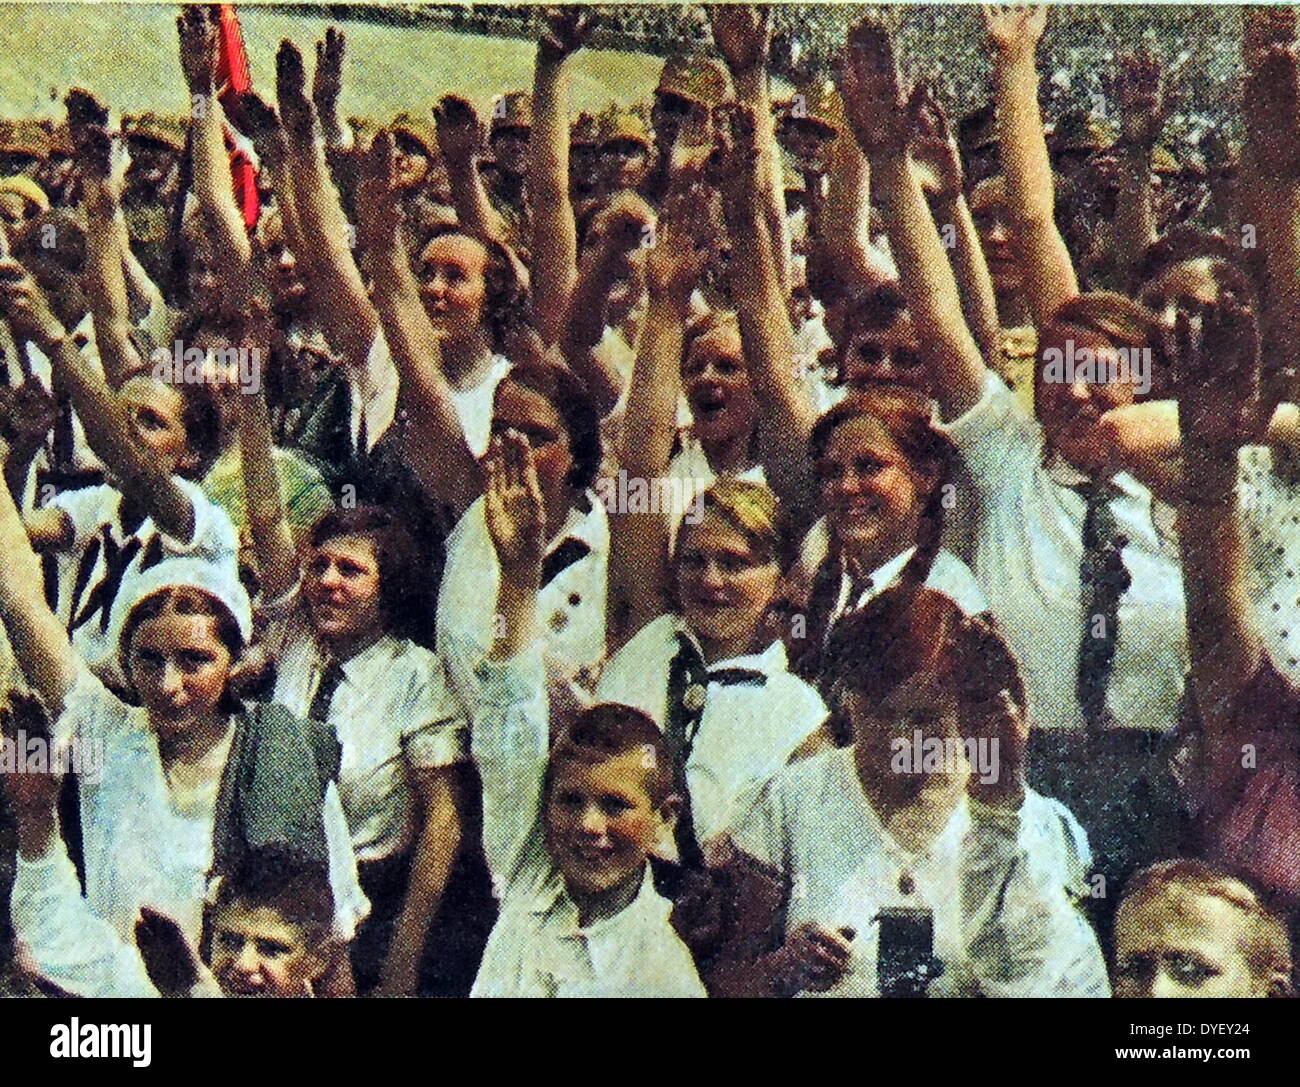 Hitler youth, gathering of young Hitler maidens (Aryan type girls) circa 1933-34 Stock Photo